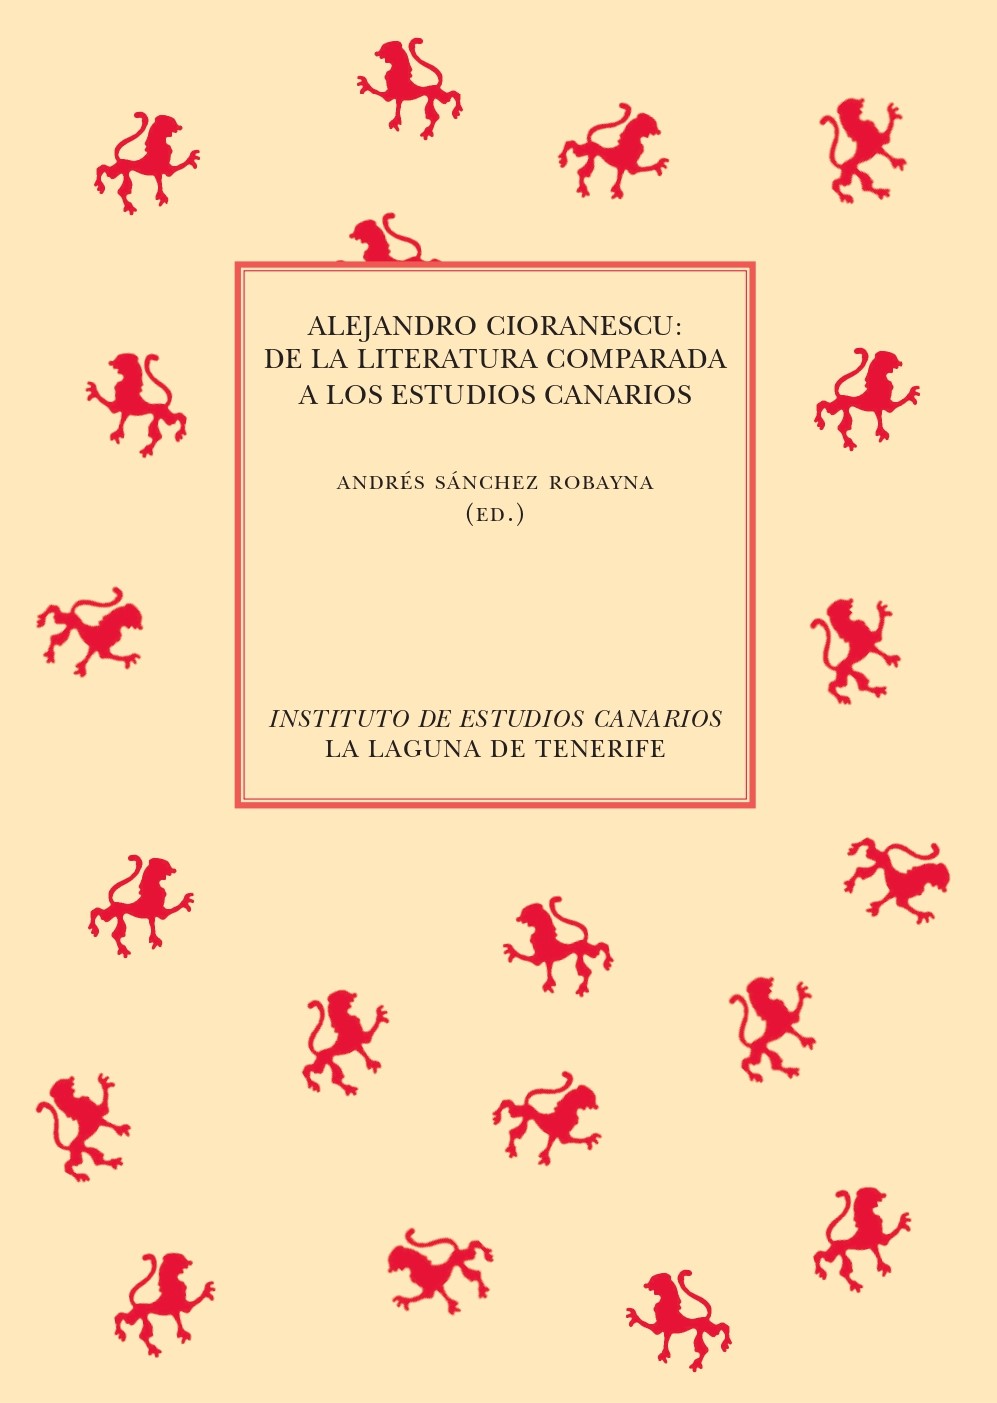 Imagen de portada del libro Alejandro Cioranescu